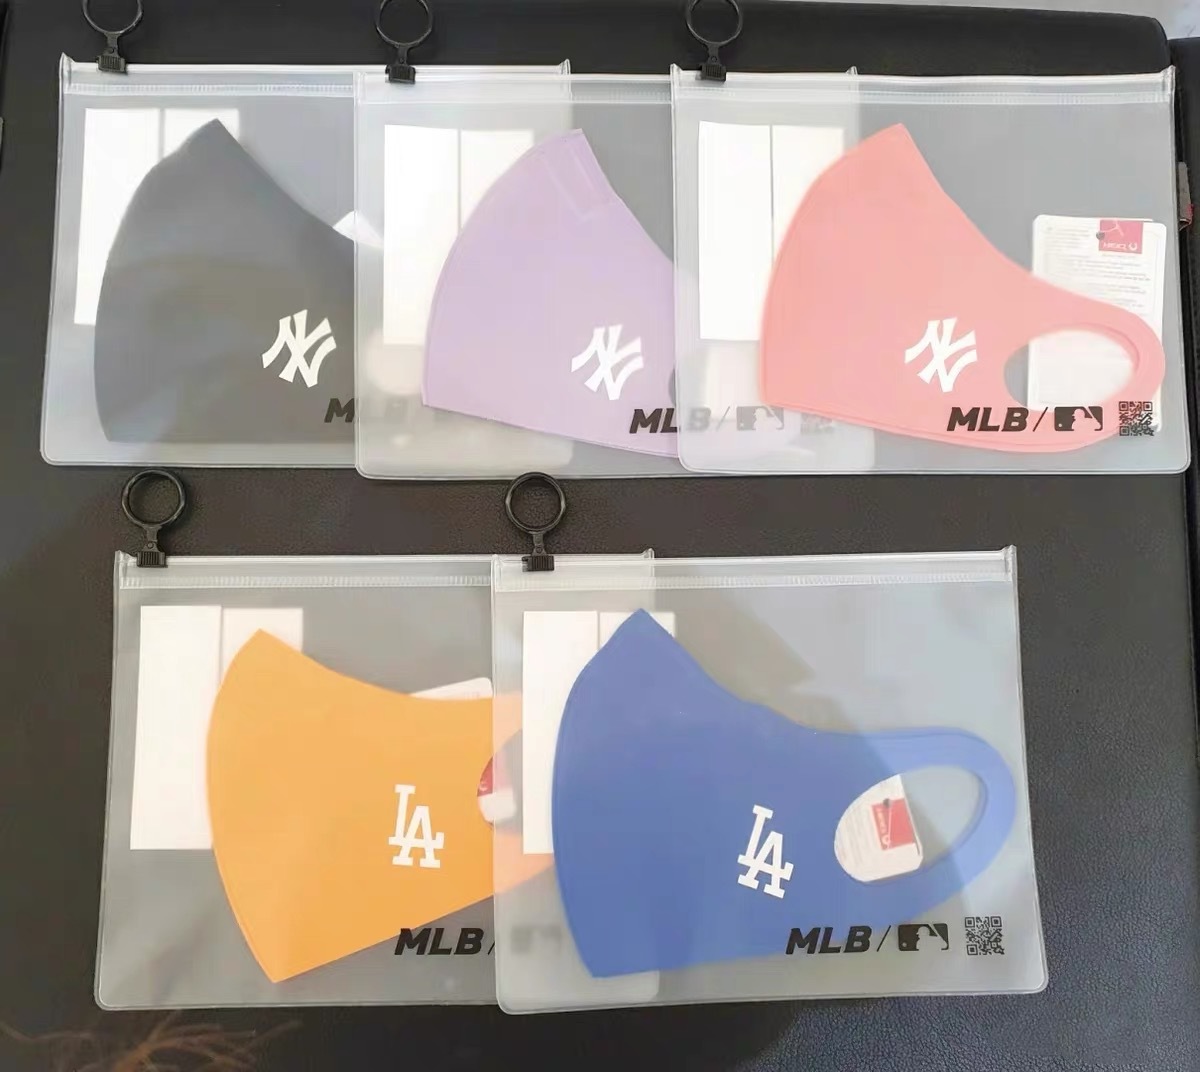 Khẩu trang MLB NY LA bằng cotton nguyên chất thoáng khí chống bụi và khói mù thời trang Hàn Quốc